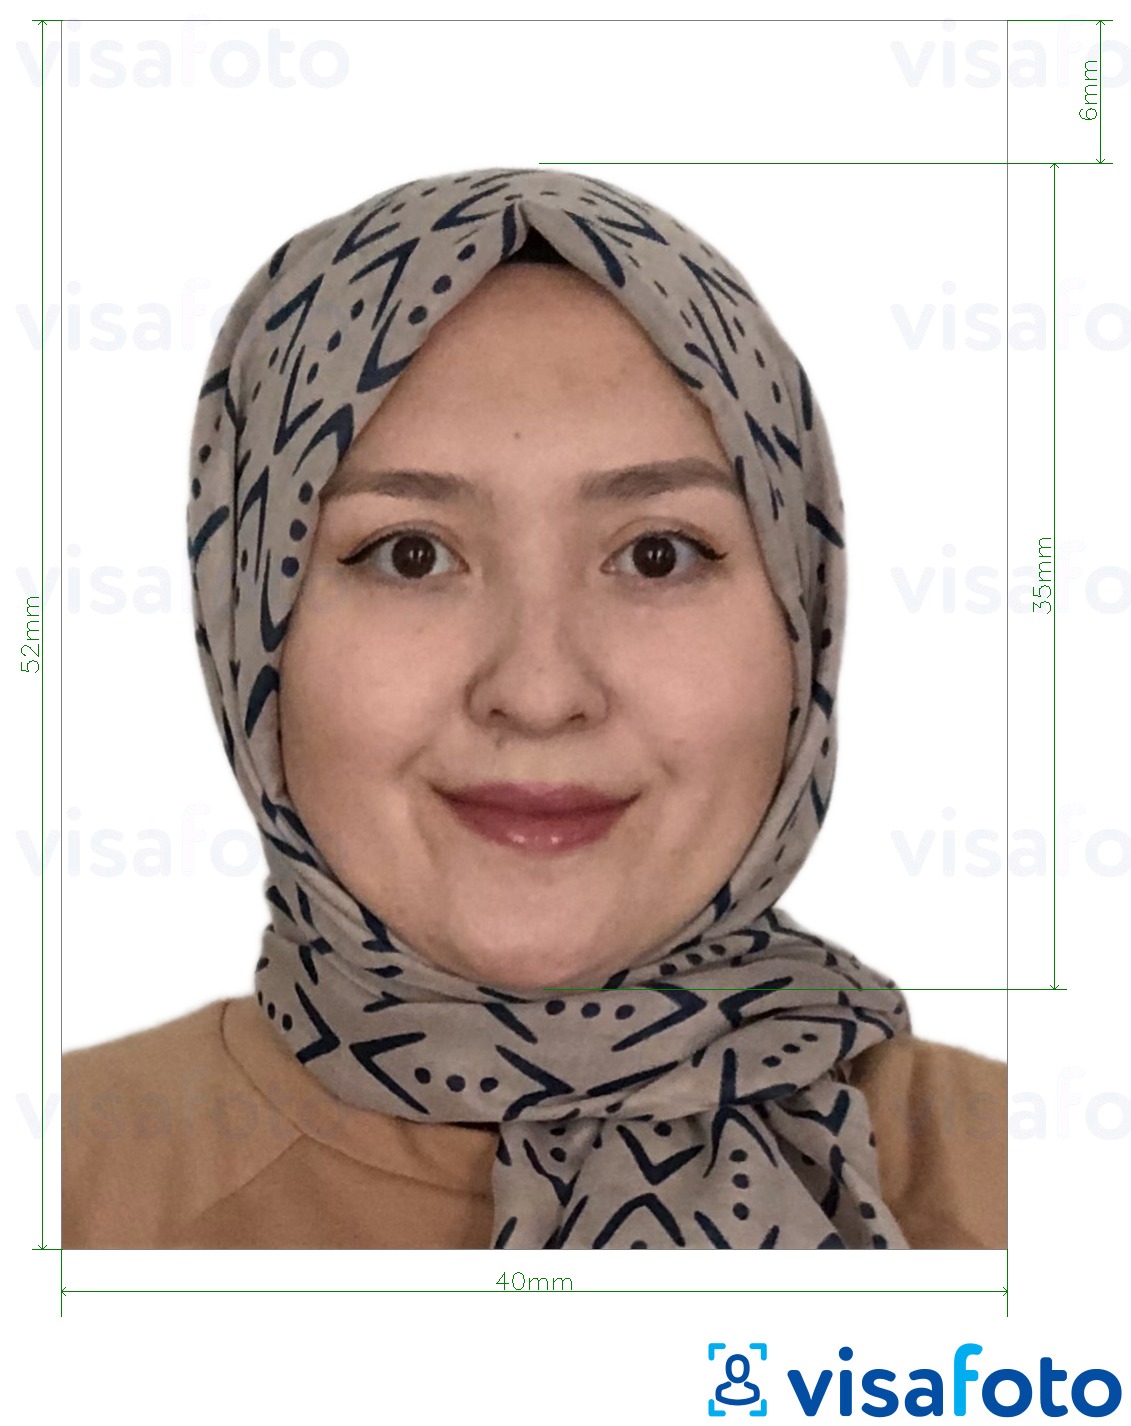 Voorbeeld van foto voor Brunei paspoort 5.2x4 cm (52x40 mm) met exacte maatspecificatie